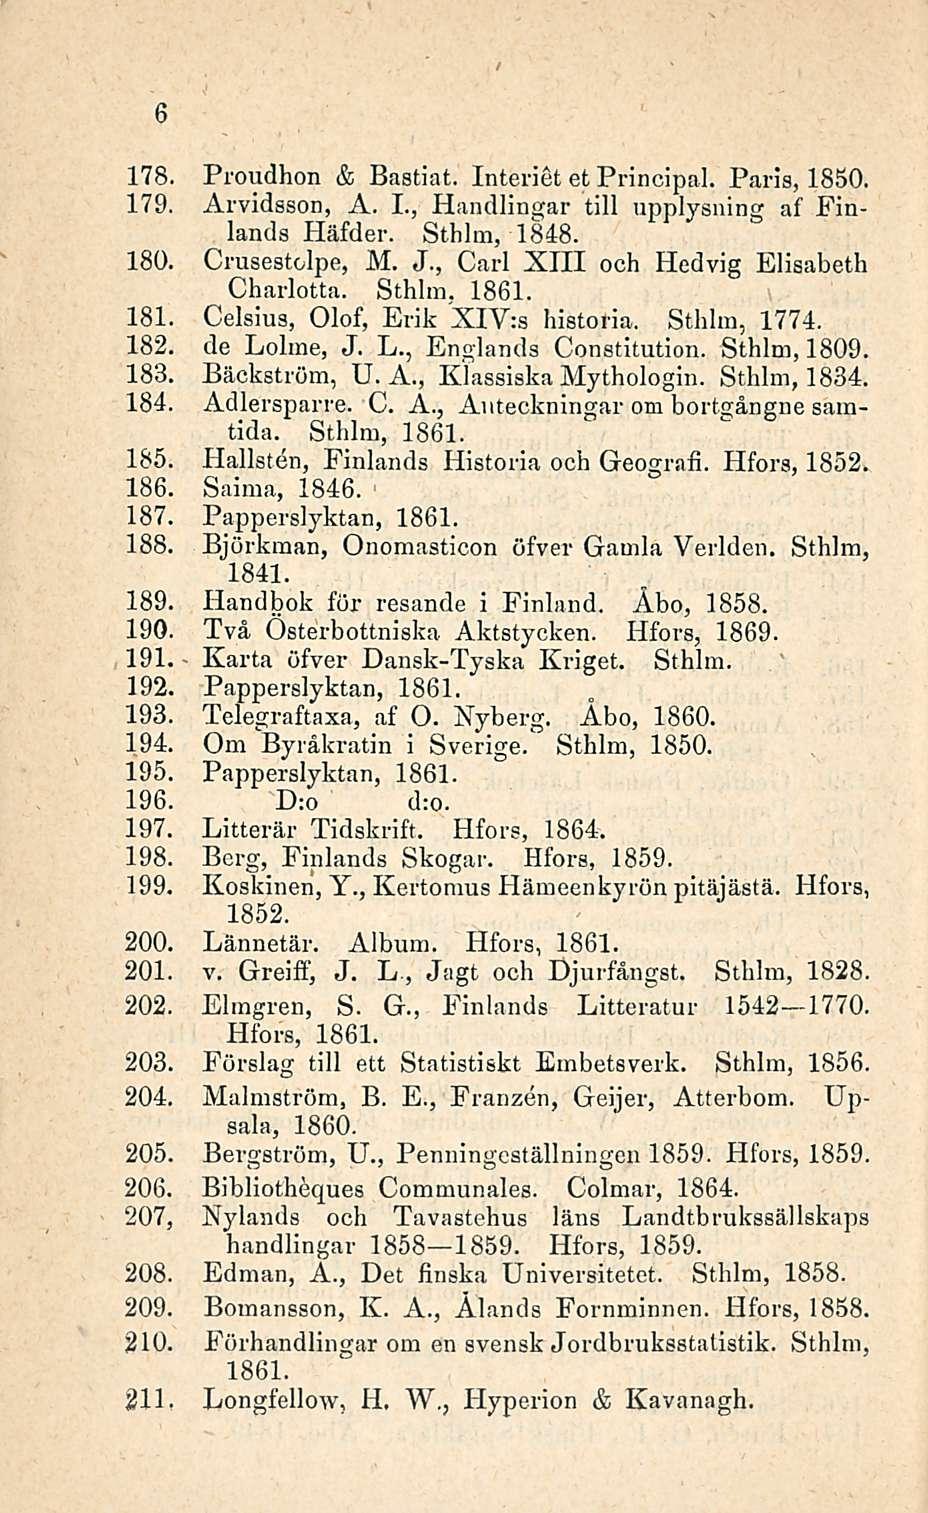 178. Proudhon & Bastiat. Interiet et Principal. Paris, 1850. 179. Arvidsson, A. 1., Handlingar tili upplysning af Finlands Häfder. Sthlm, 1848. 180. Crusestolpe, M. J.